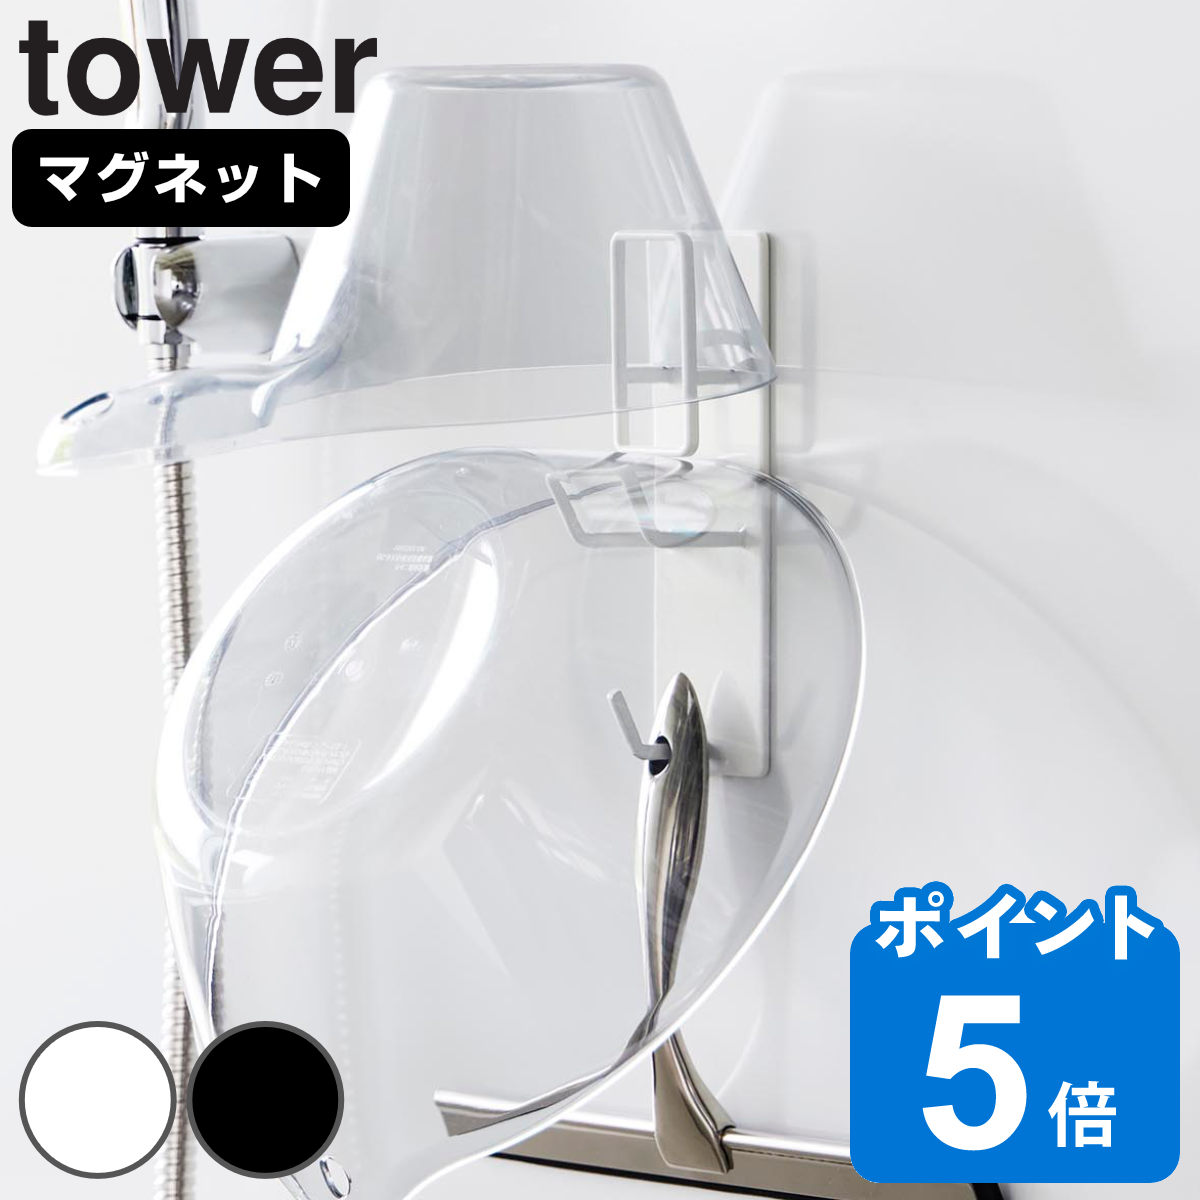 山崎実業 tower マグネットバスルーム手おけ＆湯おけホルダー タワー